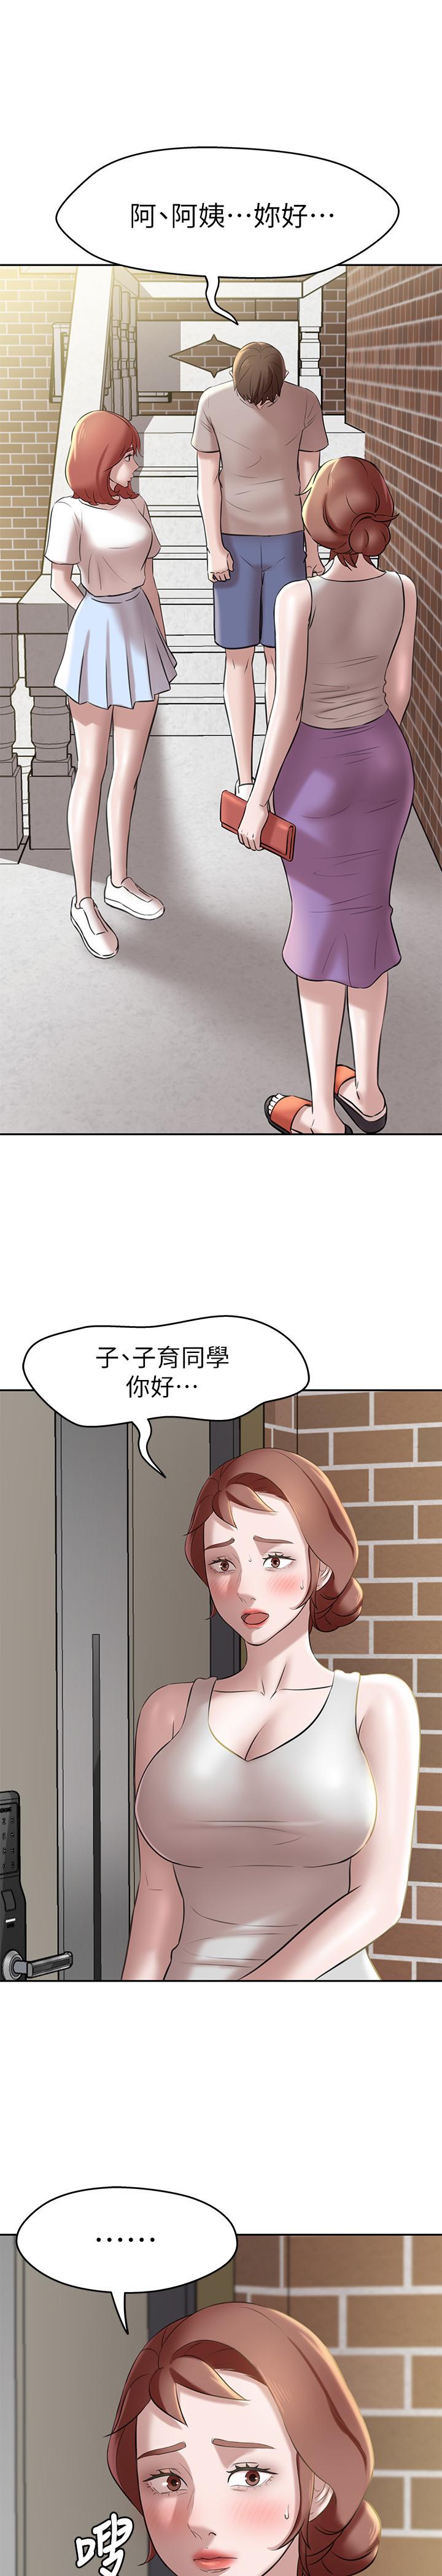 《小裤裤笔记》漫画 第12话-想抽插多年好友宥萝